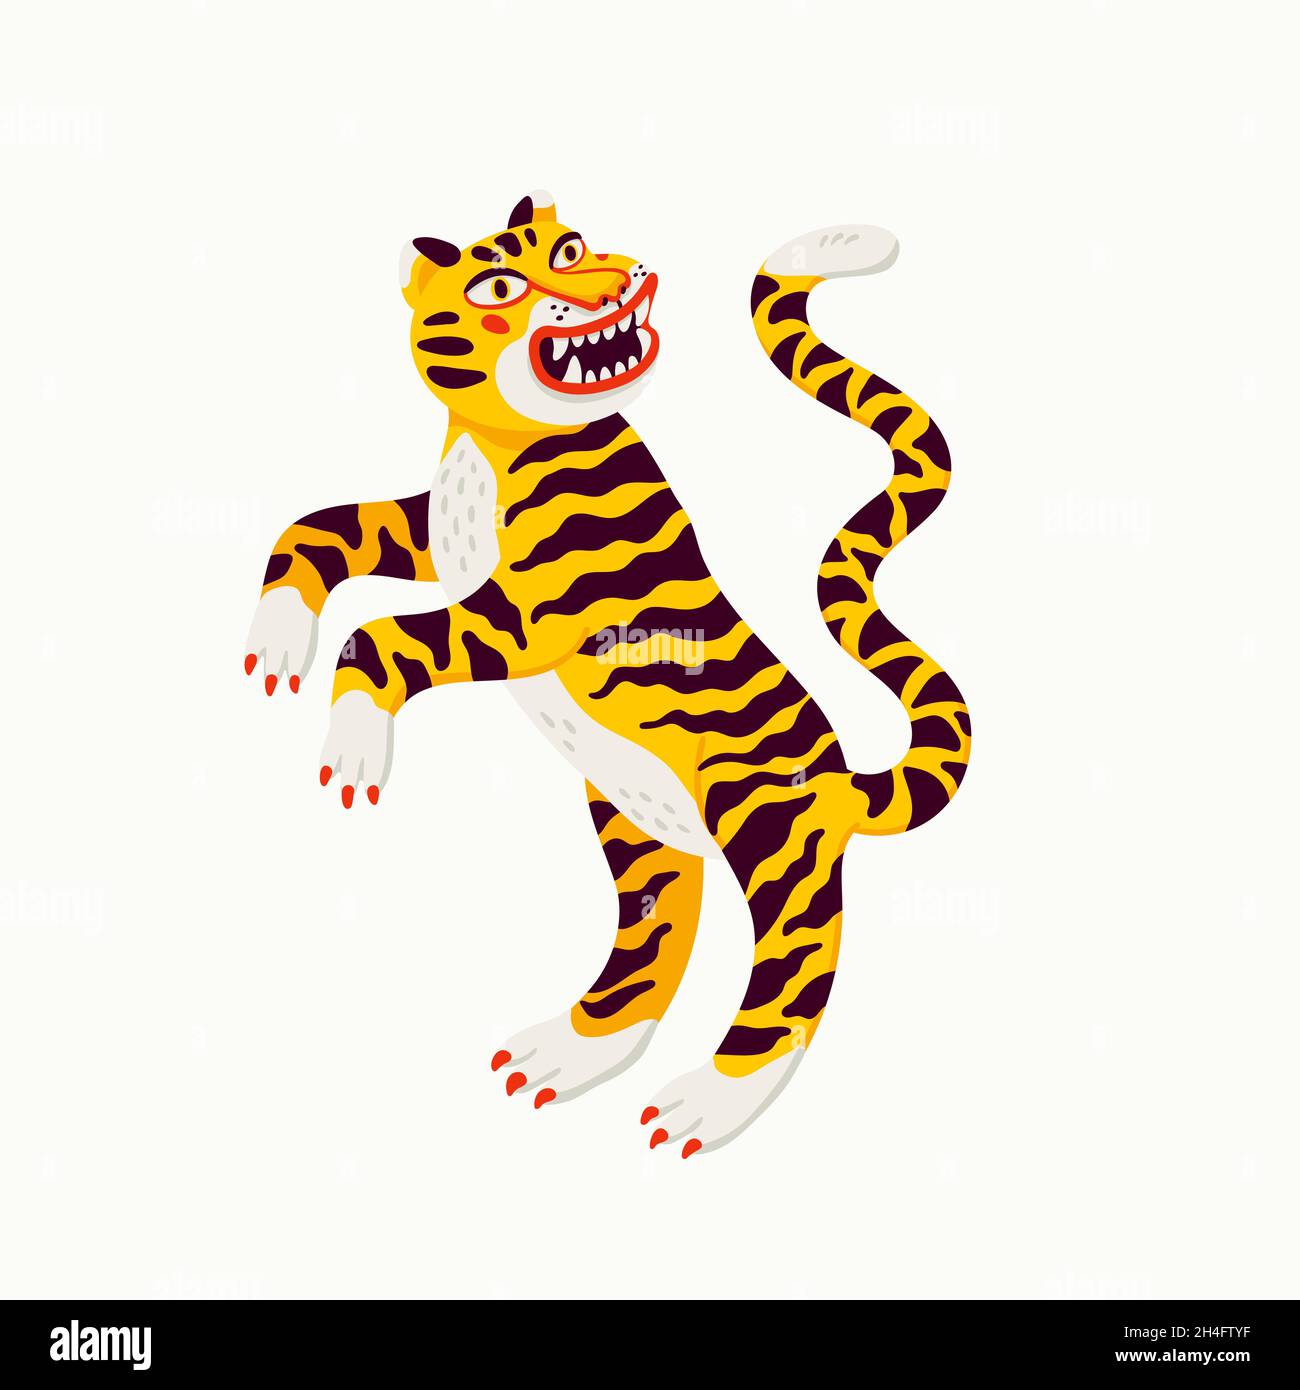 Illustrazione vettoriale della tigre, cartoon giallo tigre rampante su sfondo bianco. Illustrazione vettoriale di tipo piatto organico Illustrazione Vettoriale